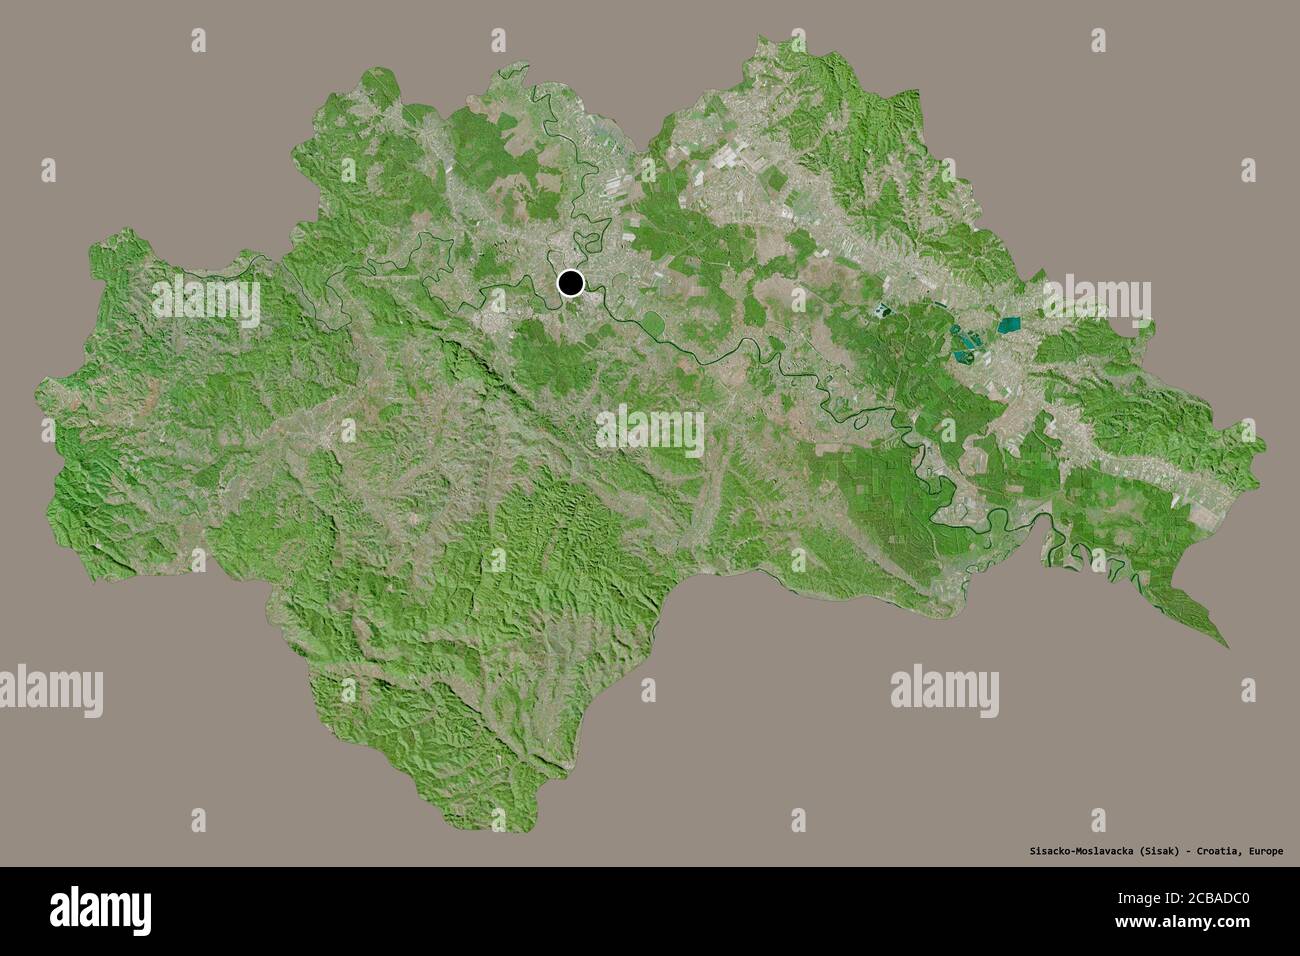 Form von Sisacko-Moslavacka, Grafschaft Kroatien, mit seiner Hauptstadt isoliert auf einem einfarbigen Hintergrund. Satellitenbilder. 3D-Rendering Stockfoto